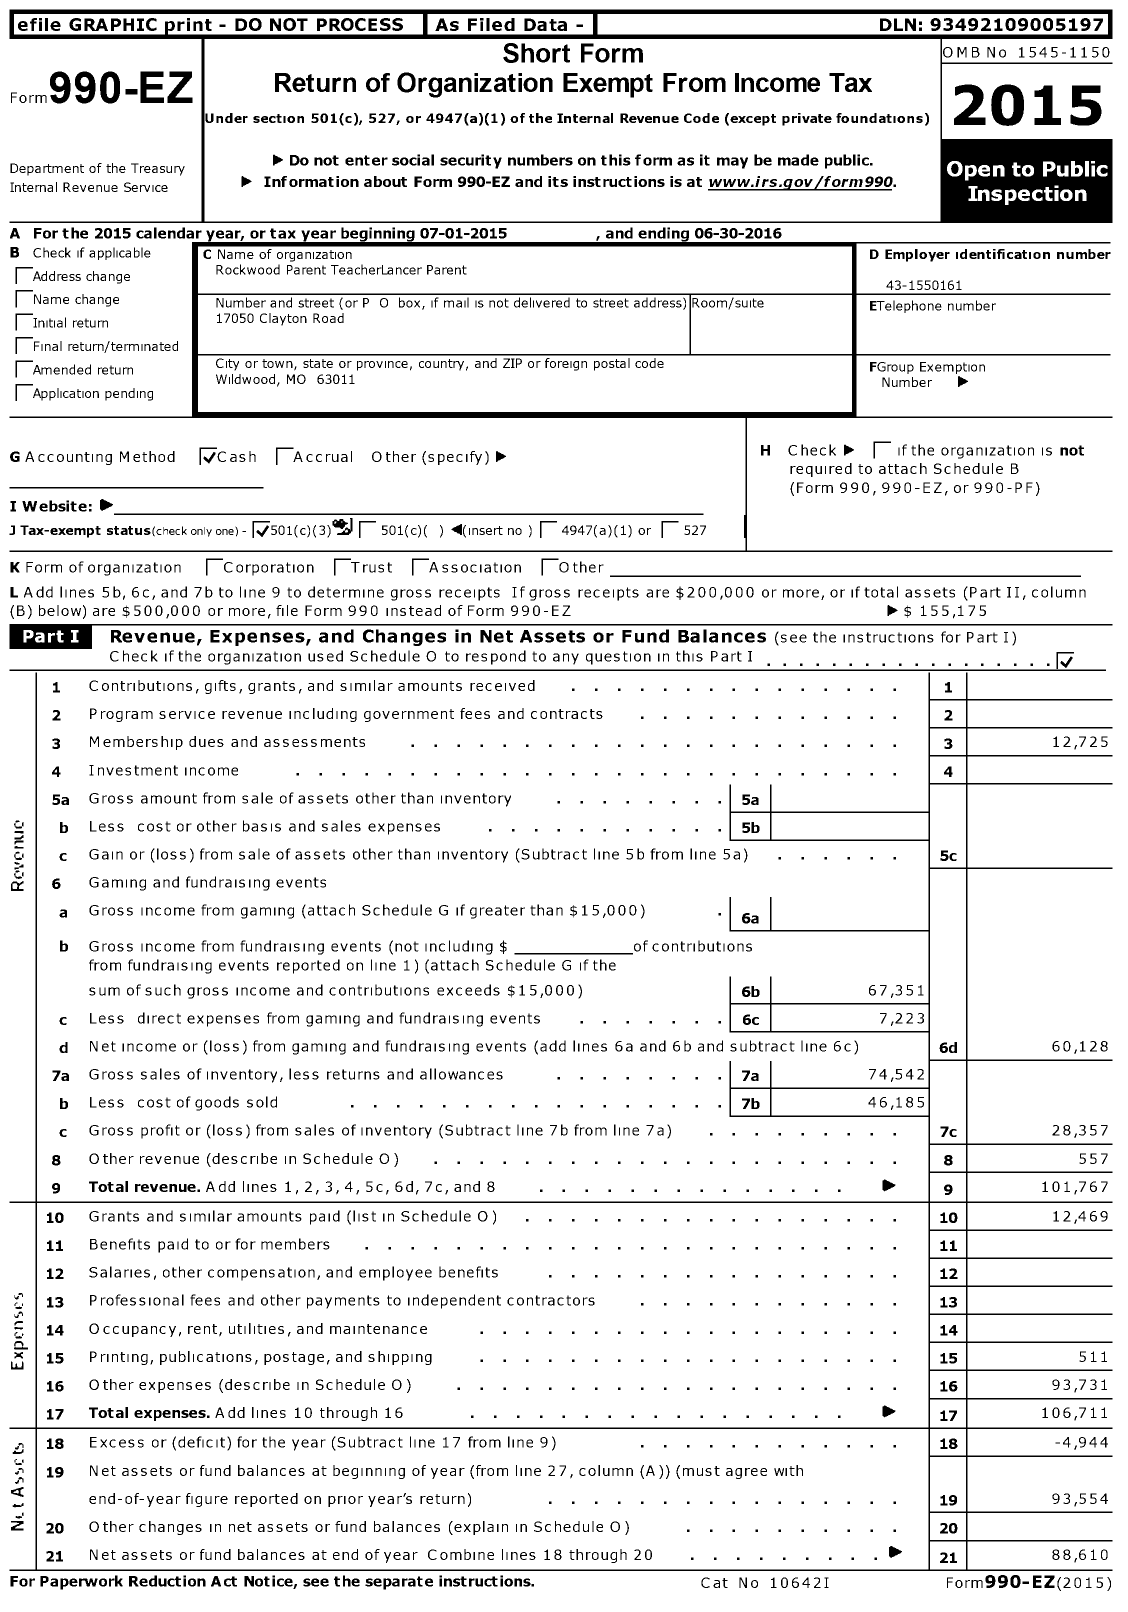 Image of first page of 2015 Form 990EZ for Rockwood Parent TeacherLancer Lancer Parent Organization